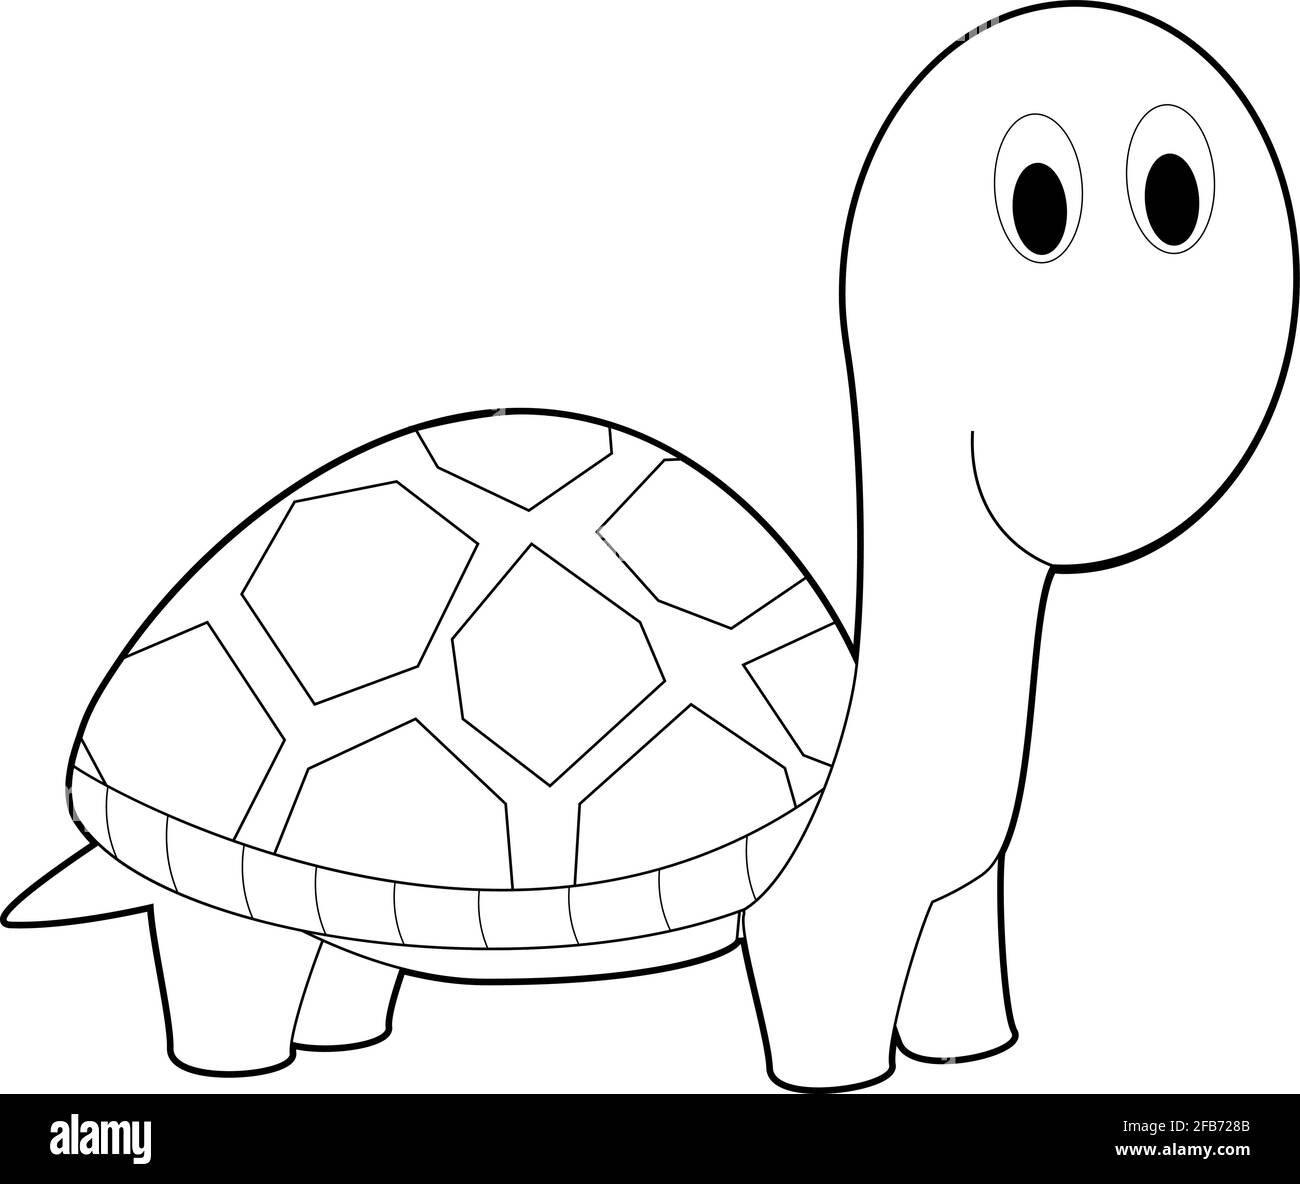 Disegni facili da colorare di animali per bambini piccoli: Tartaruga  Immagine e Vettoriale - Alamy